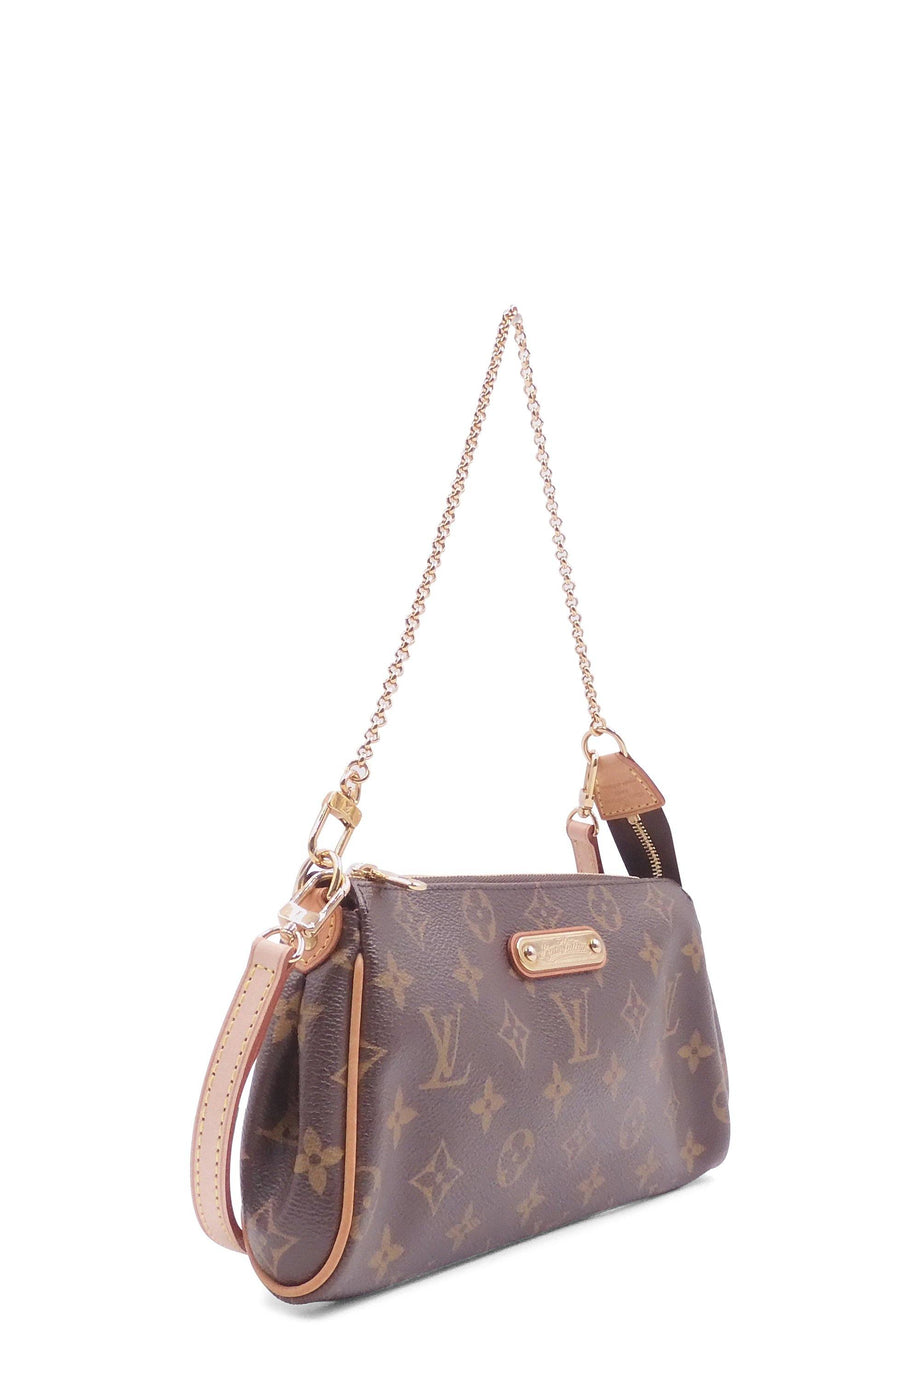 Eva cloth handbag Louis Vuitton Brown in Cloth - 38855022